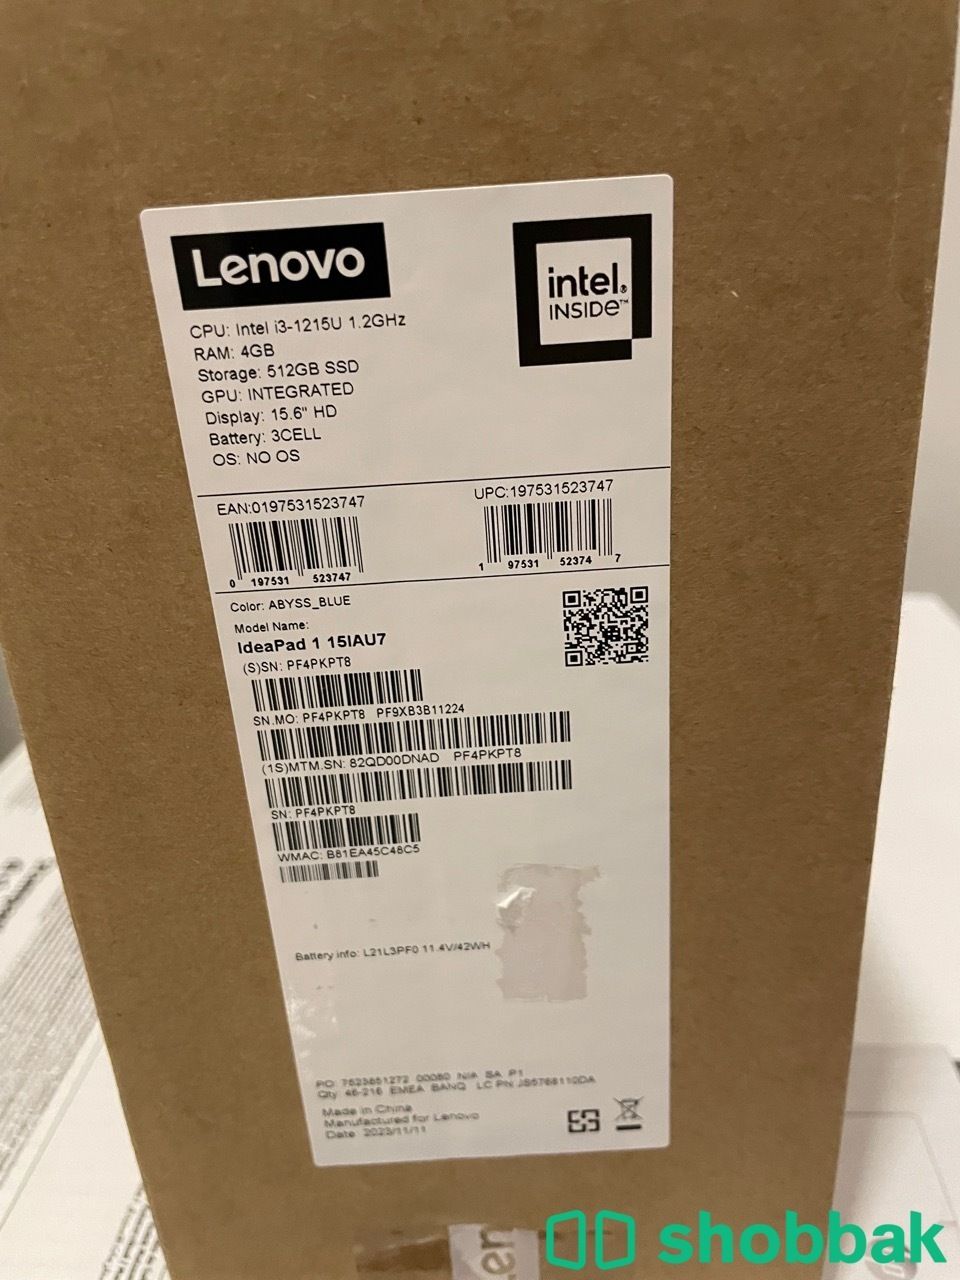 لاب توب محمول شركه Lenovo كمبيوتر مكتبي شركه DELL طابعه ليزر hp mfp 137nw طابعه  Shobbak Saudi Arabia